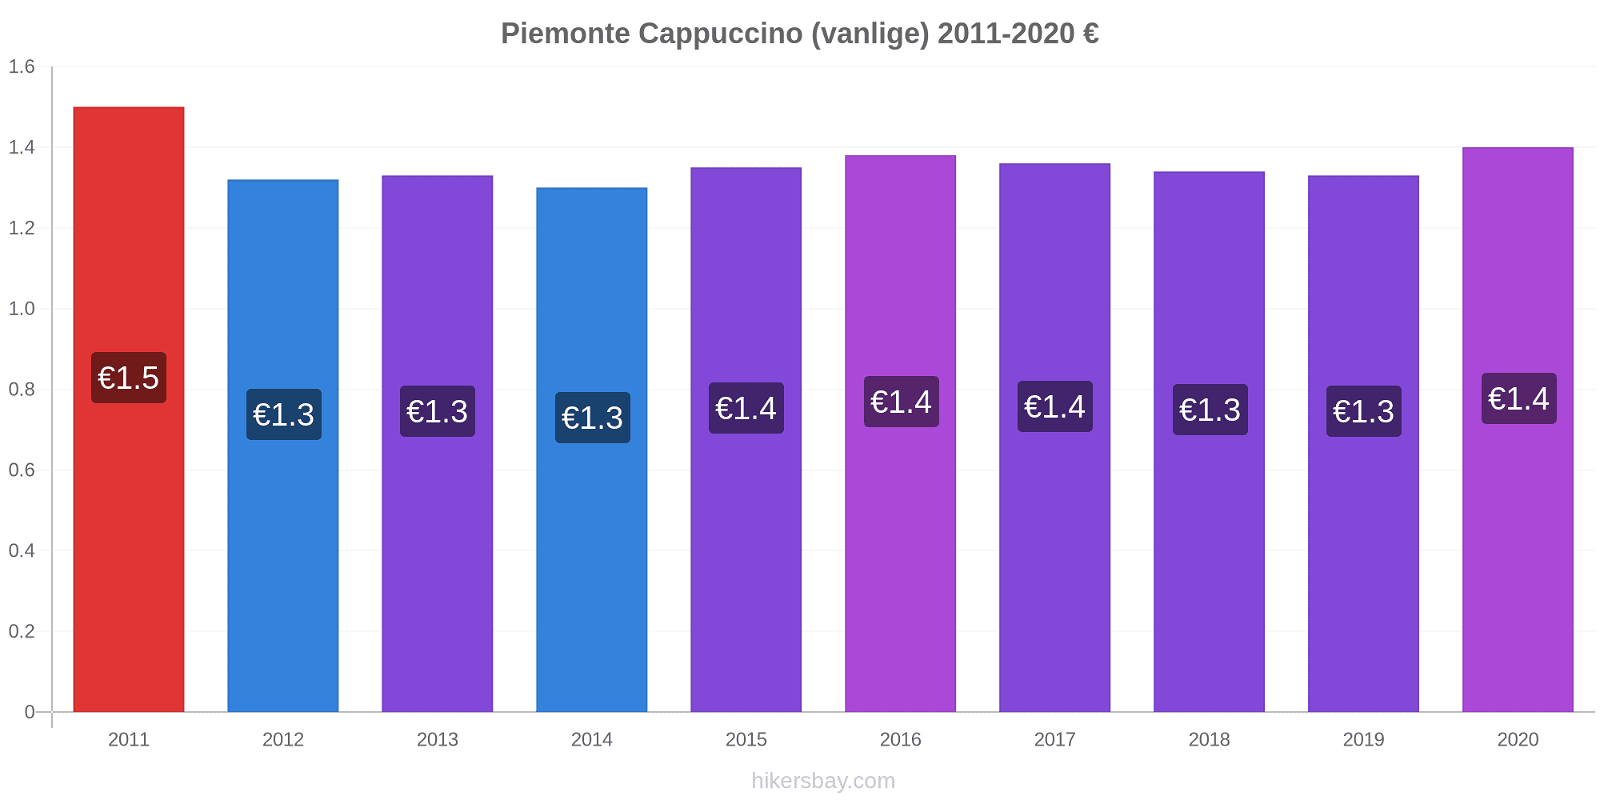 Piemonte prisendringer Cappuccino (vanlige) hikersbay.com